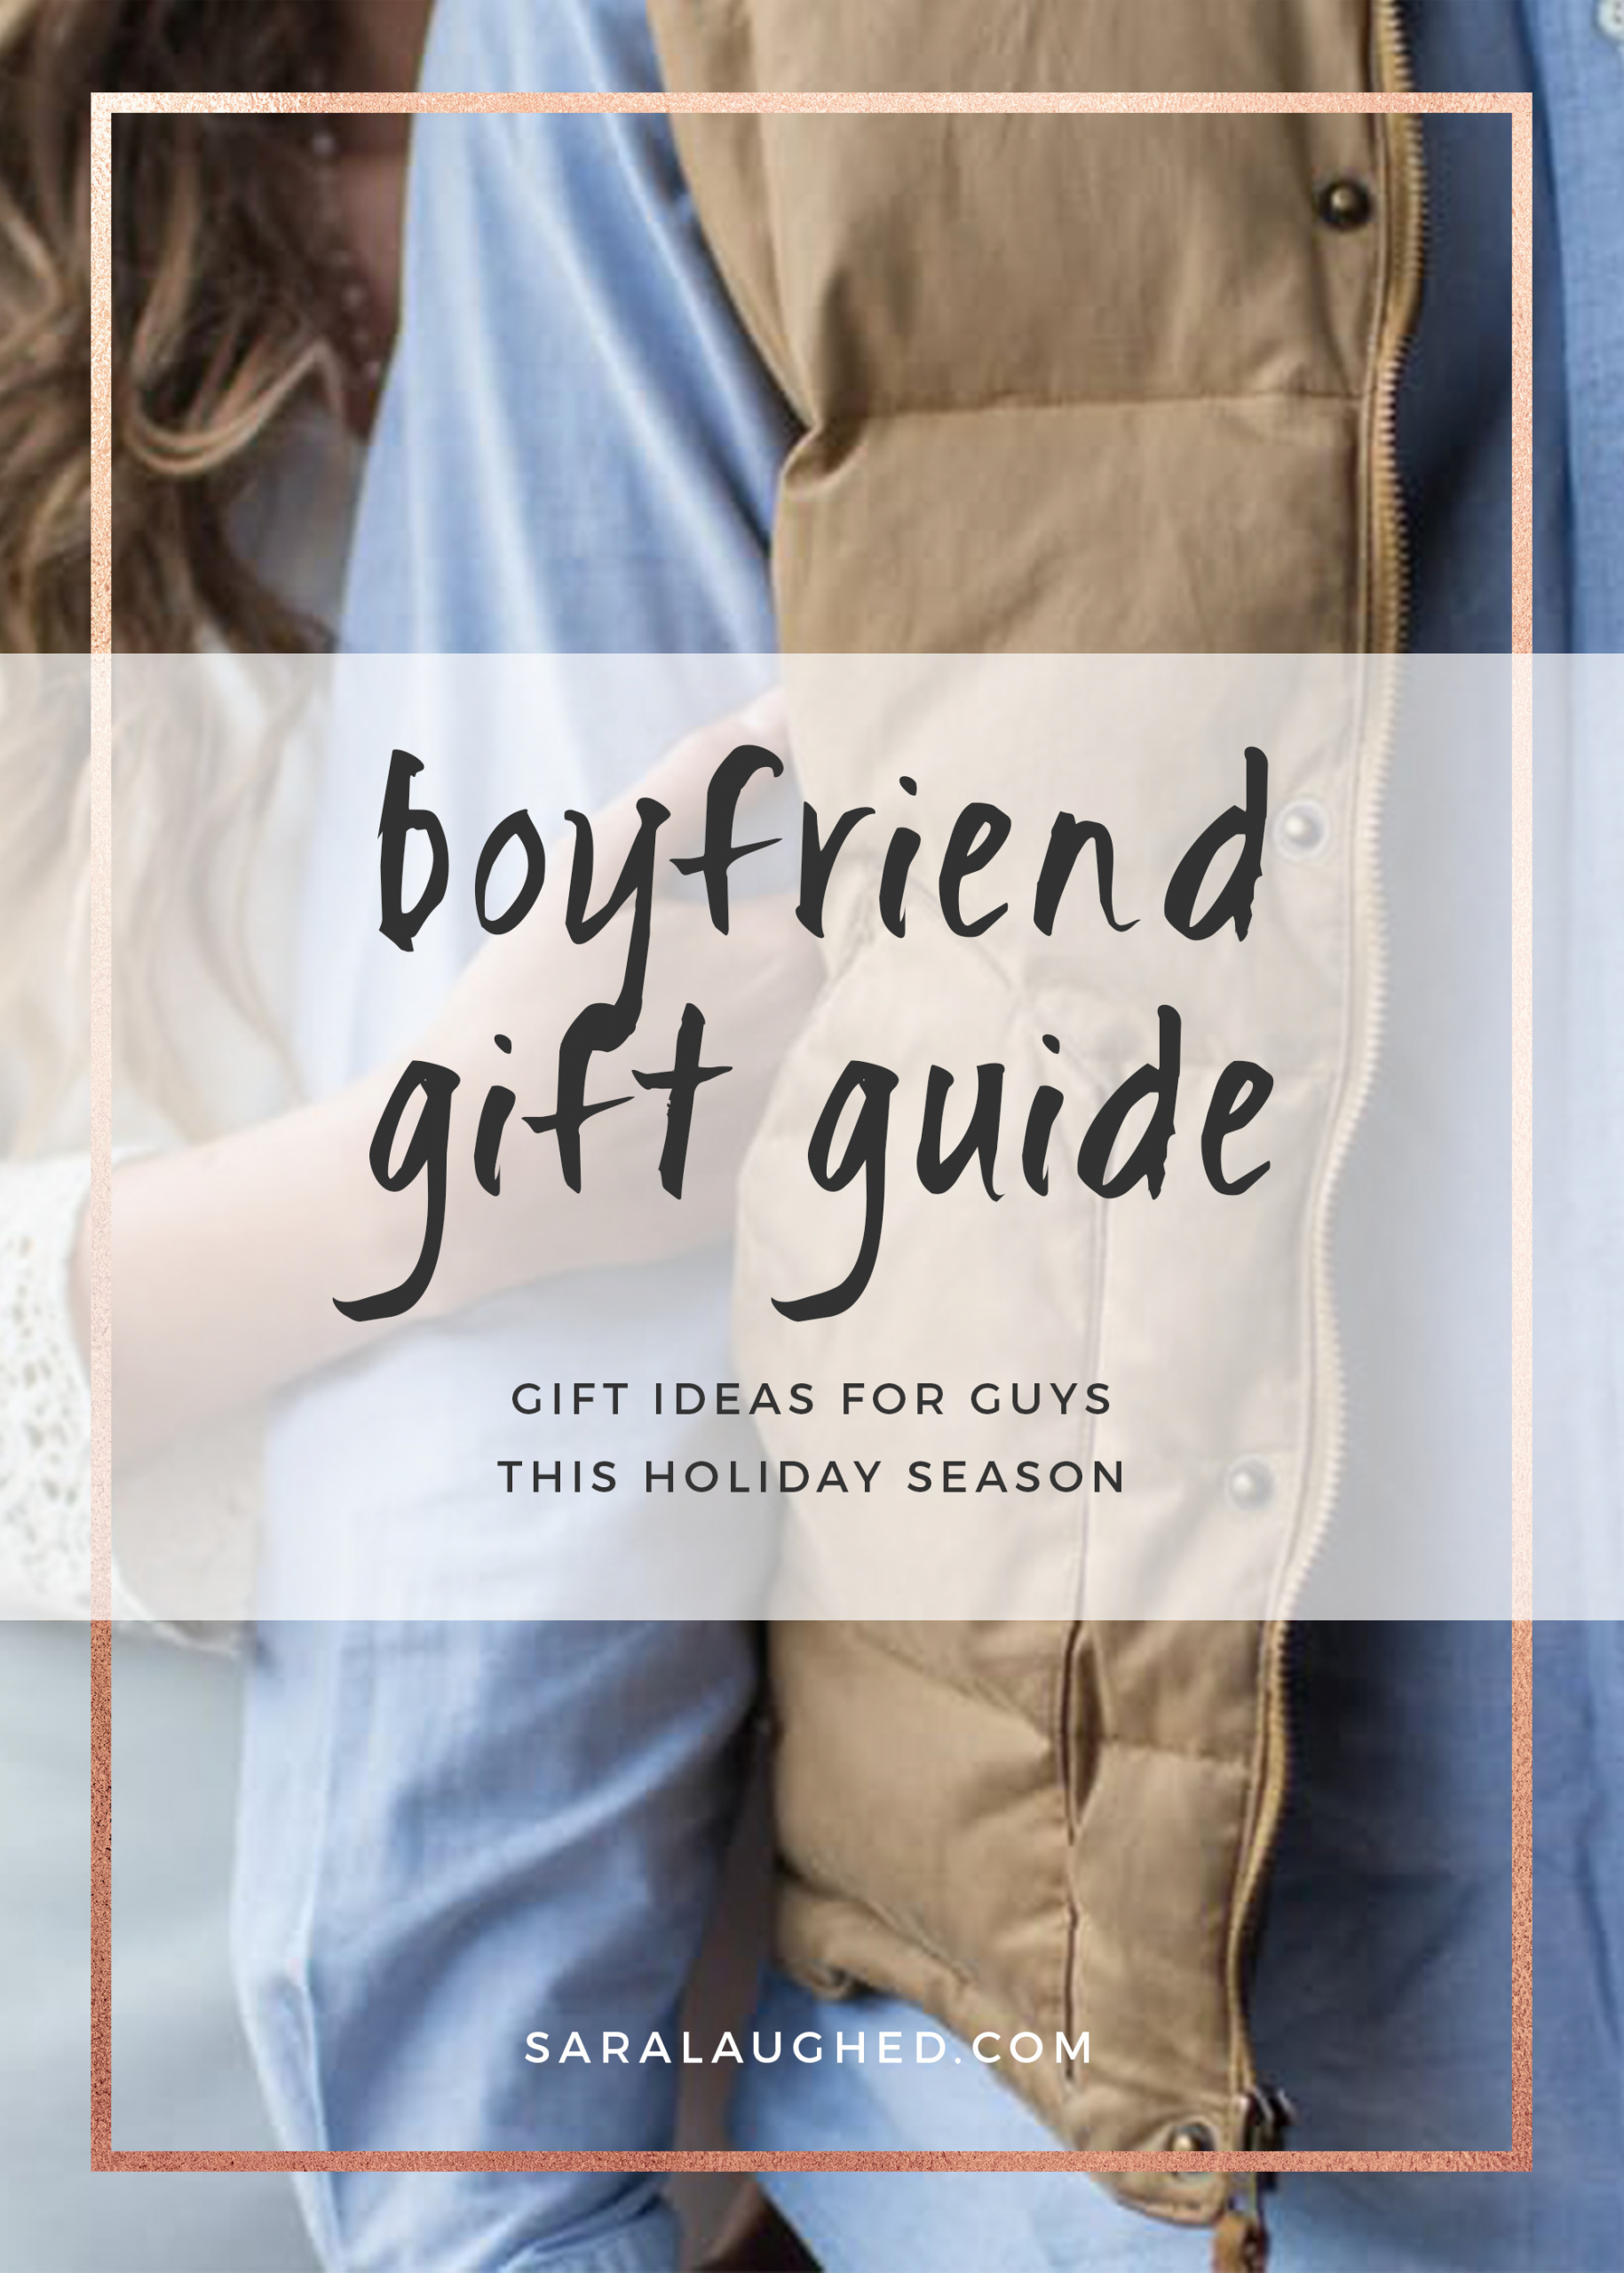 Gift Ideas To Get Your Boyfriend
 Gift Ideas for Guys What to Get Your Boyfriend for